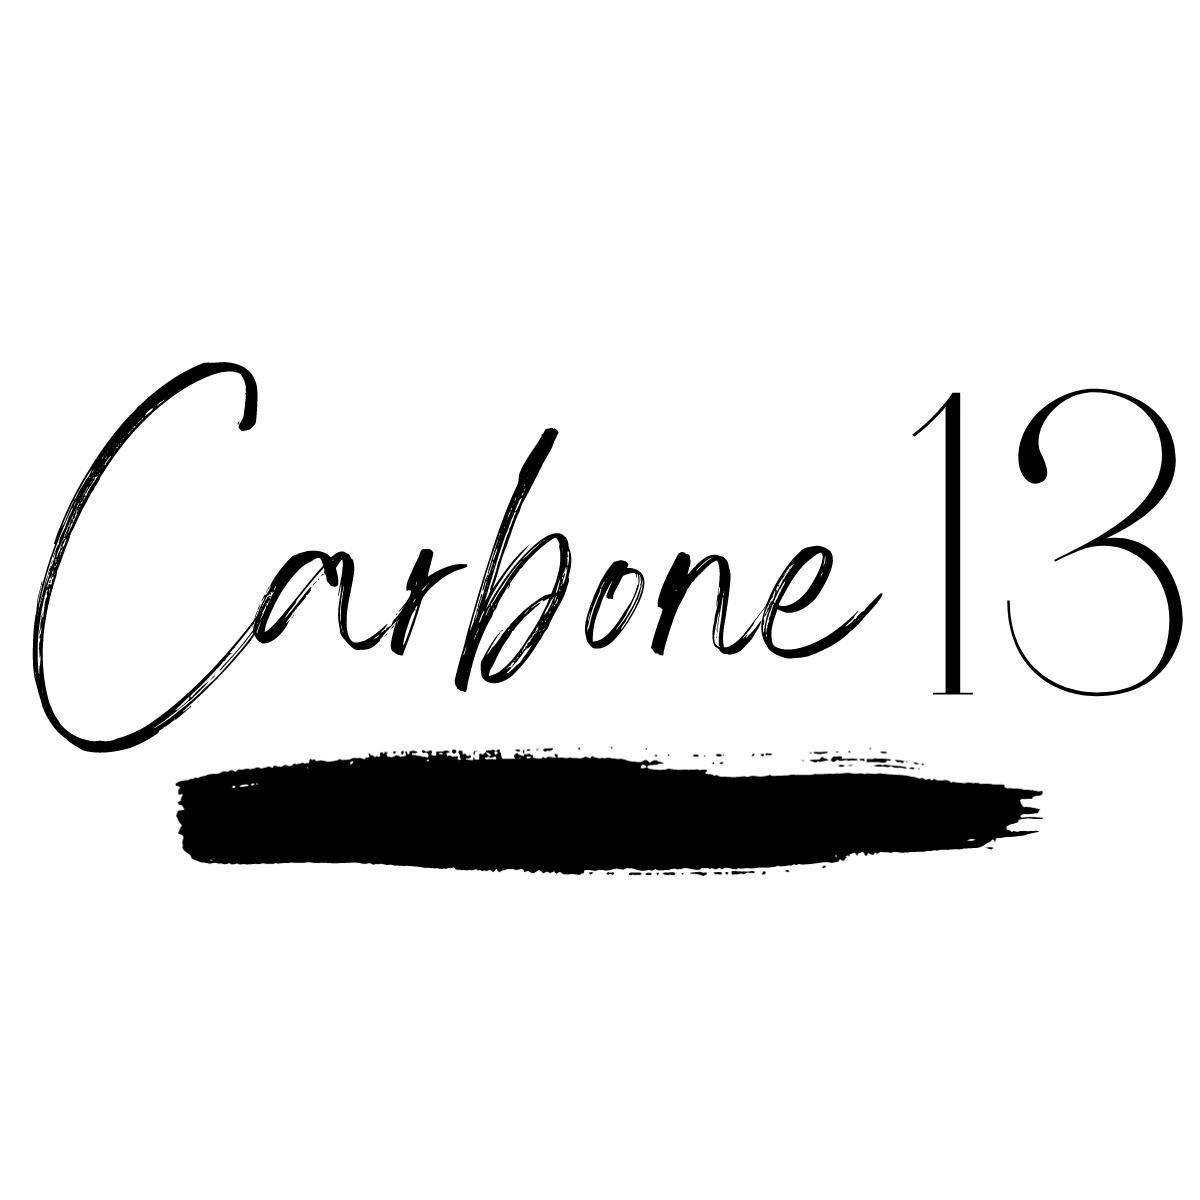 Tuque - Carbonne 13